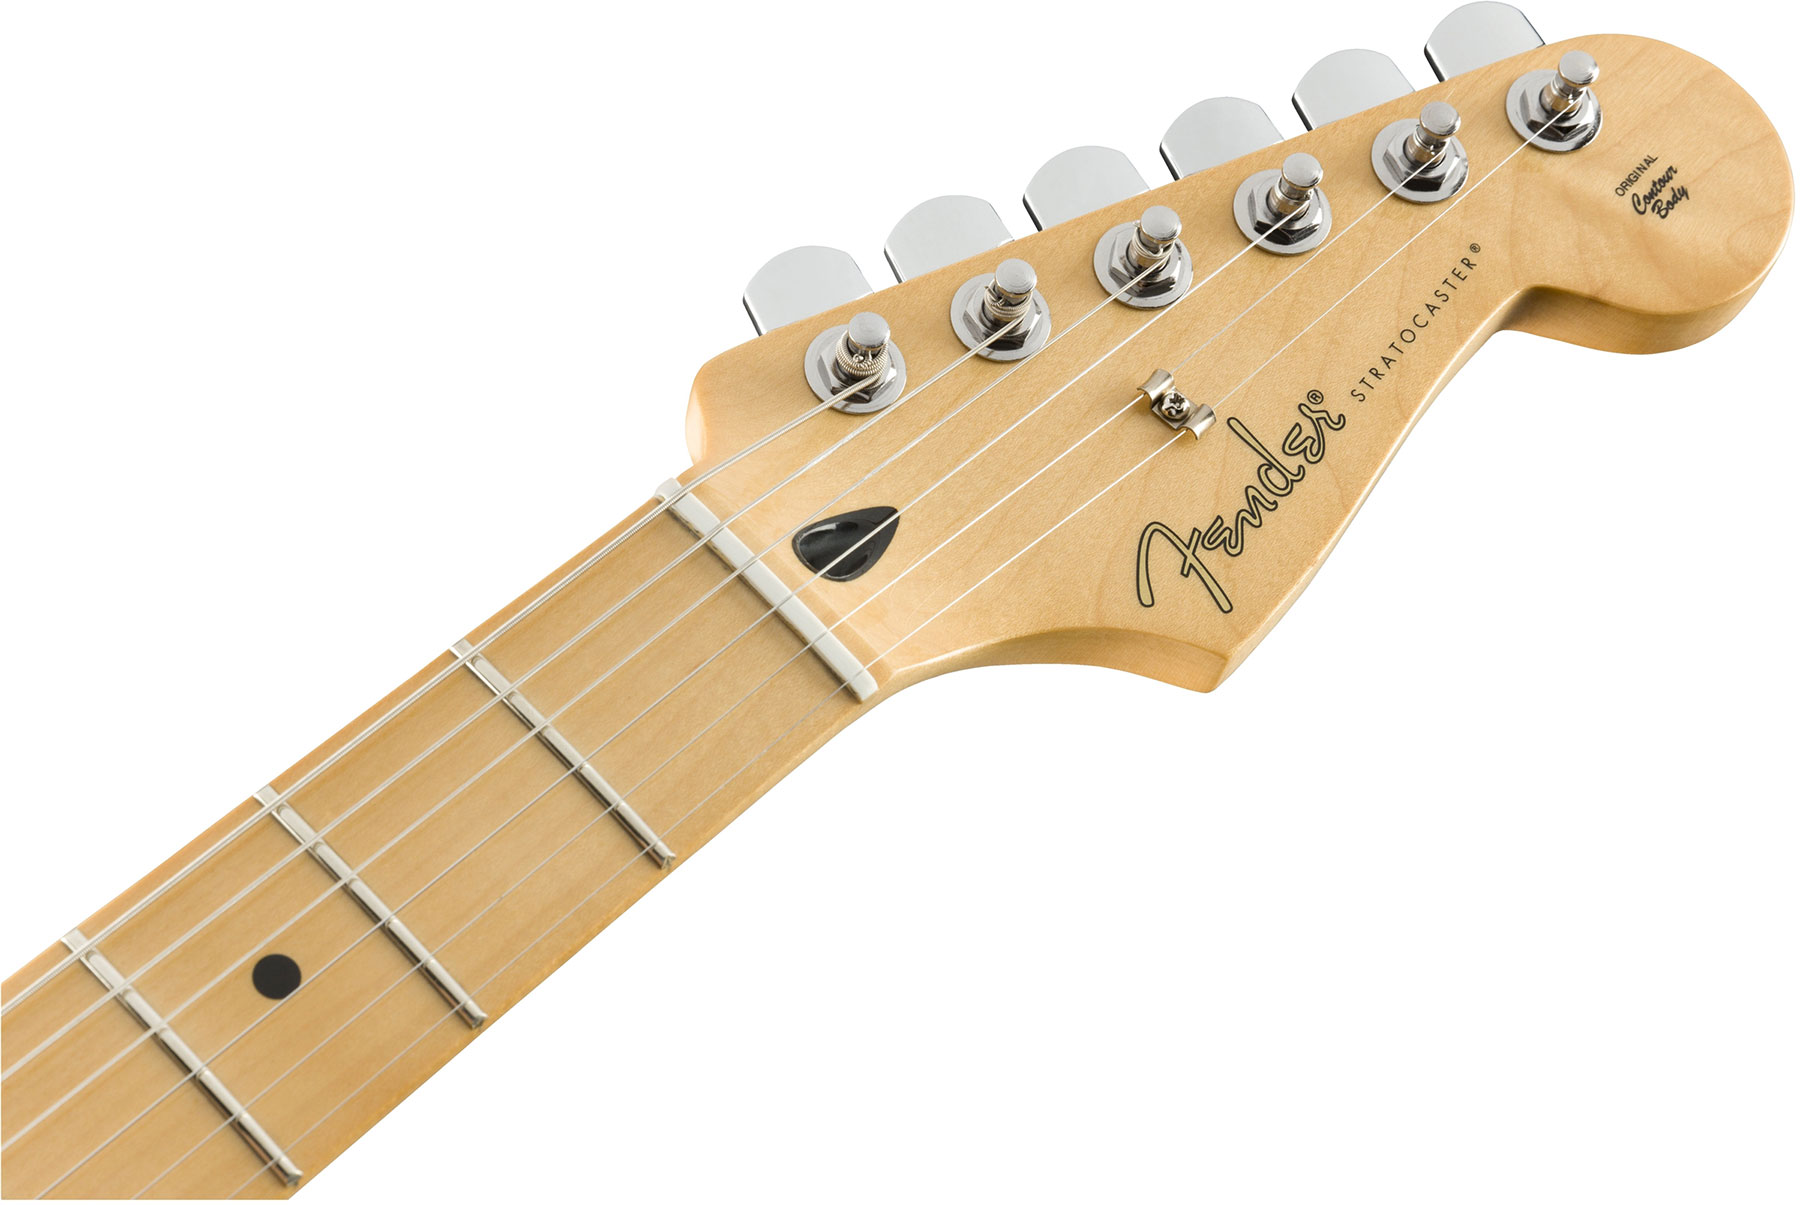 Fender Strat Player Mex Hss Mn - 3-color Sunburst - Str shape electric guitar - Variation 3